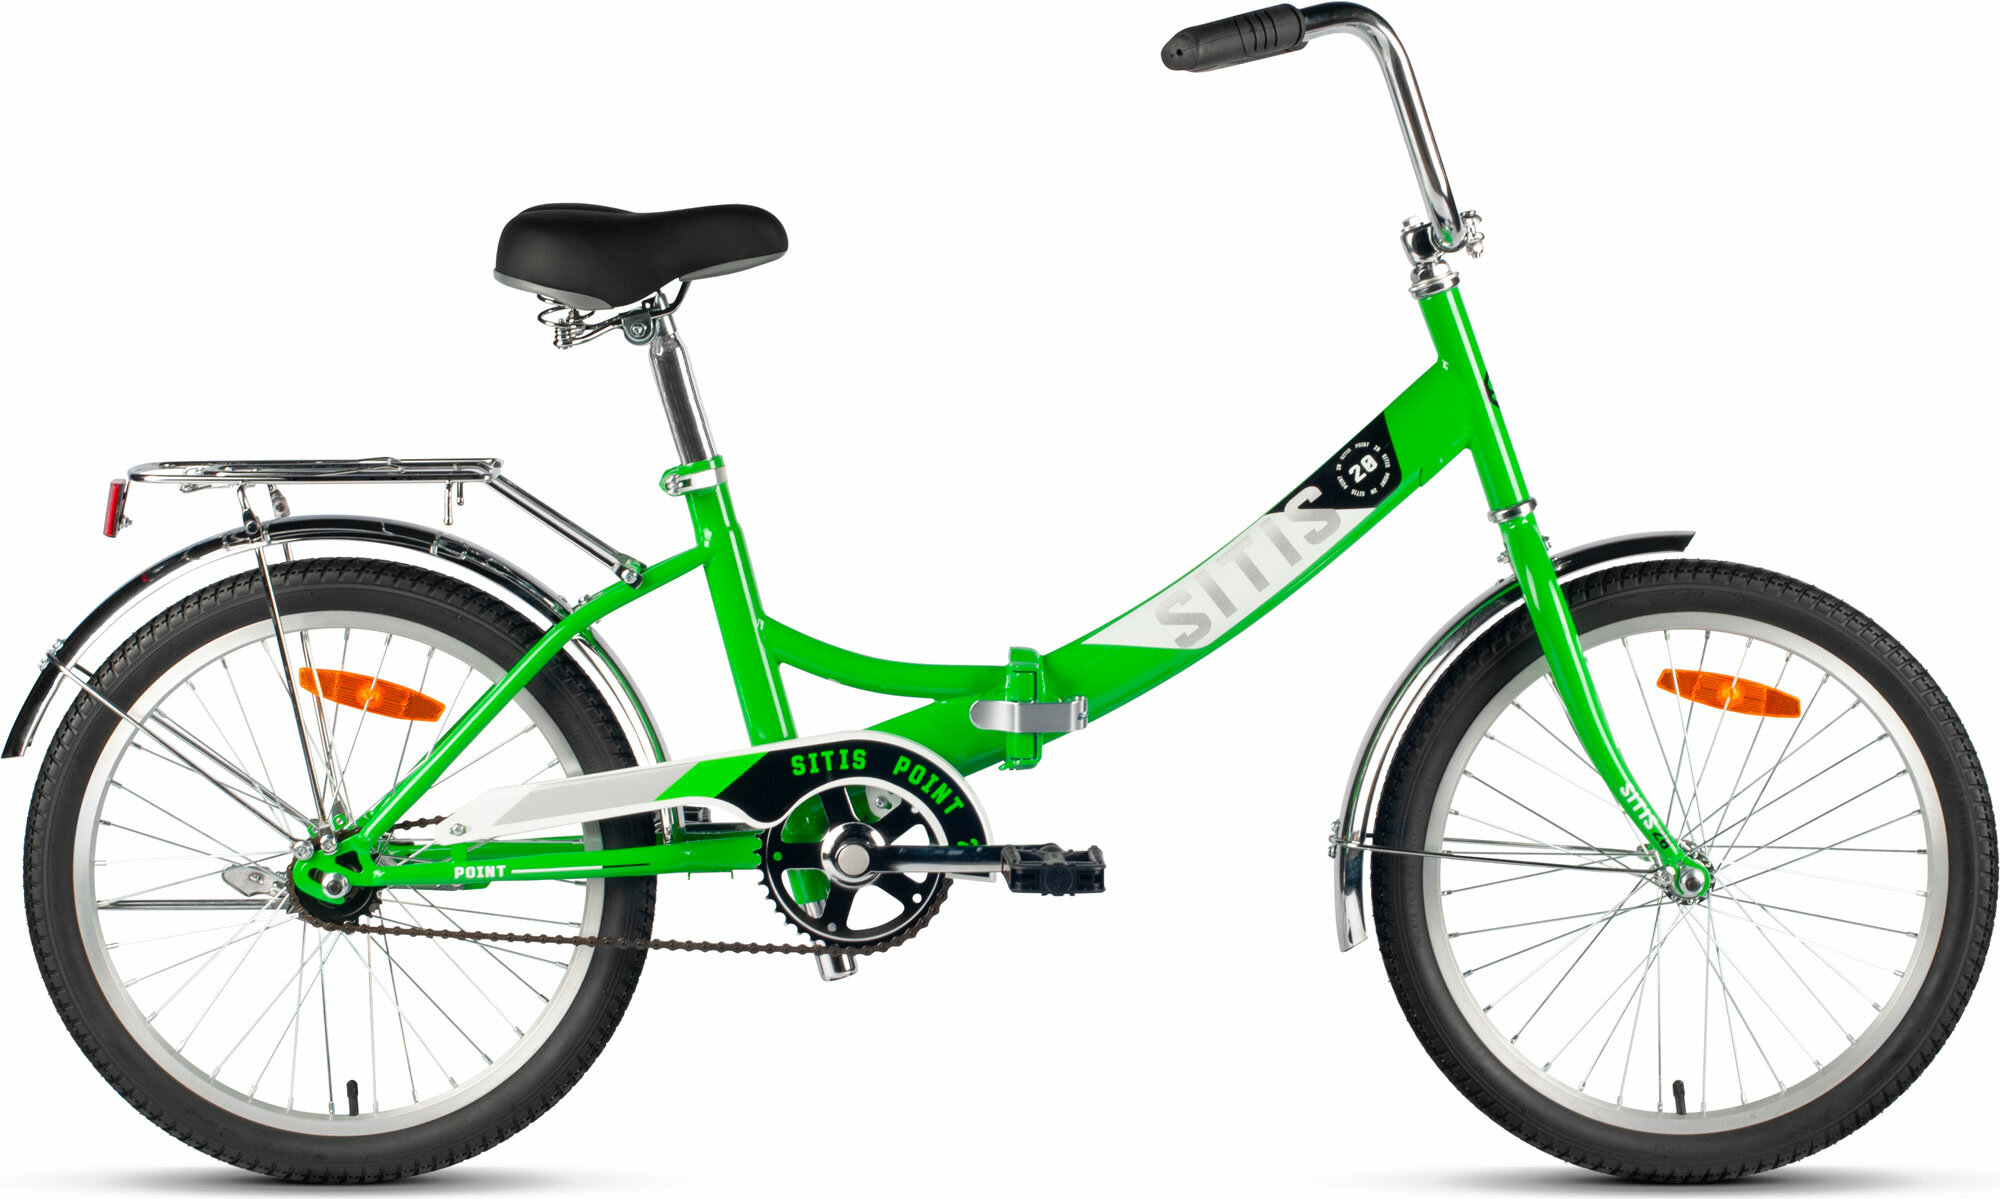 Велосипед складной SITIS POINT 20" (2024), ригид, складная рама, взрослый, стальная рама, 1 скорость, ножной тормоз, цвет Green-White-Black, зеленый/белый/черный цвет, размер рамы 20", для роста 150-180 см